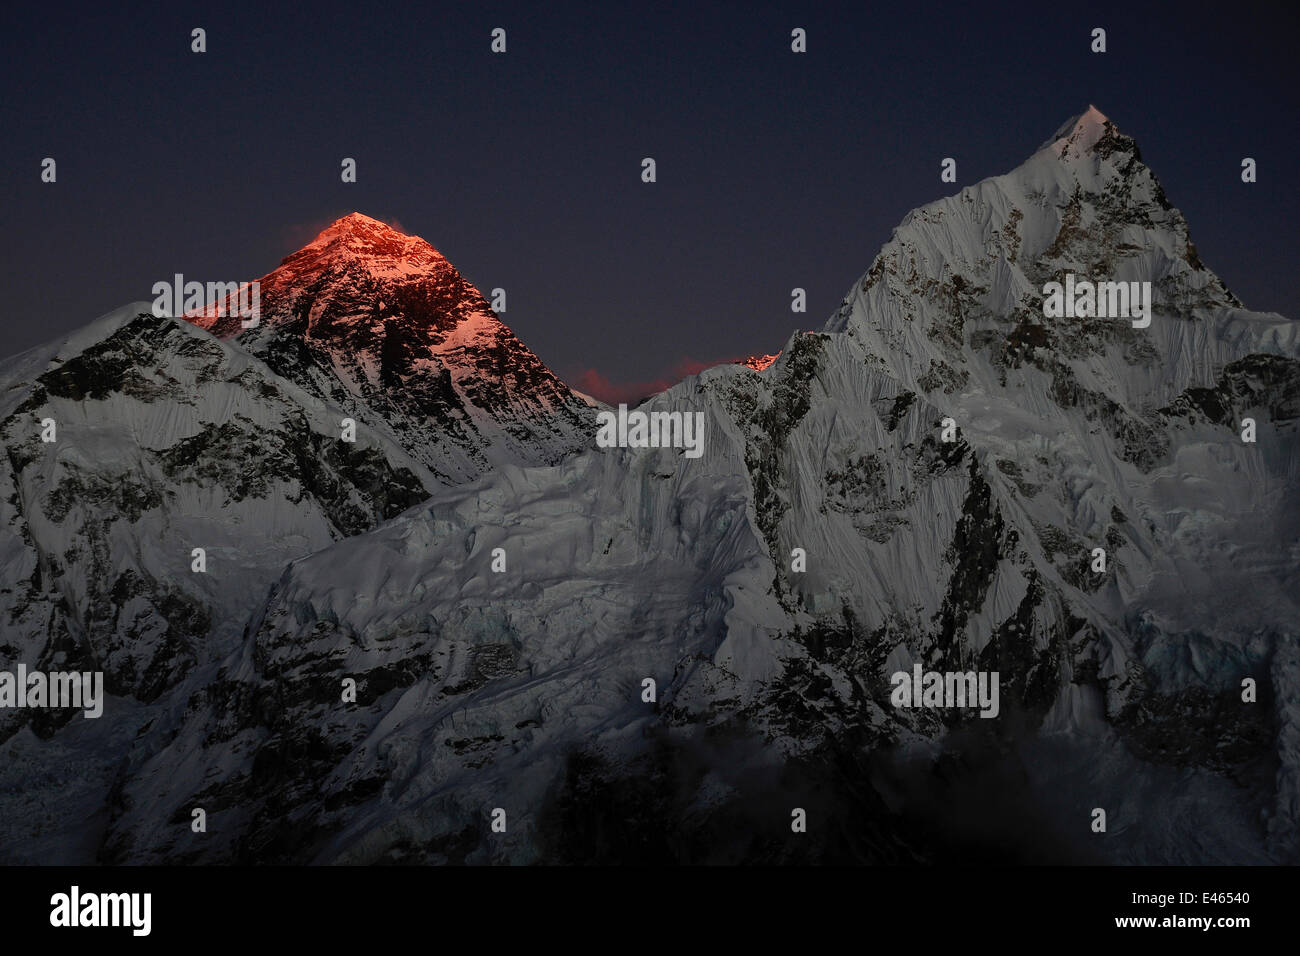 Les dernières lueurs du jour éclairer le sommet du mont Everest, parc national de Sagarmatha, Khumbu, Himalaya, Népal, octobre 2011. Banque D'Images